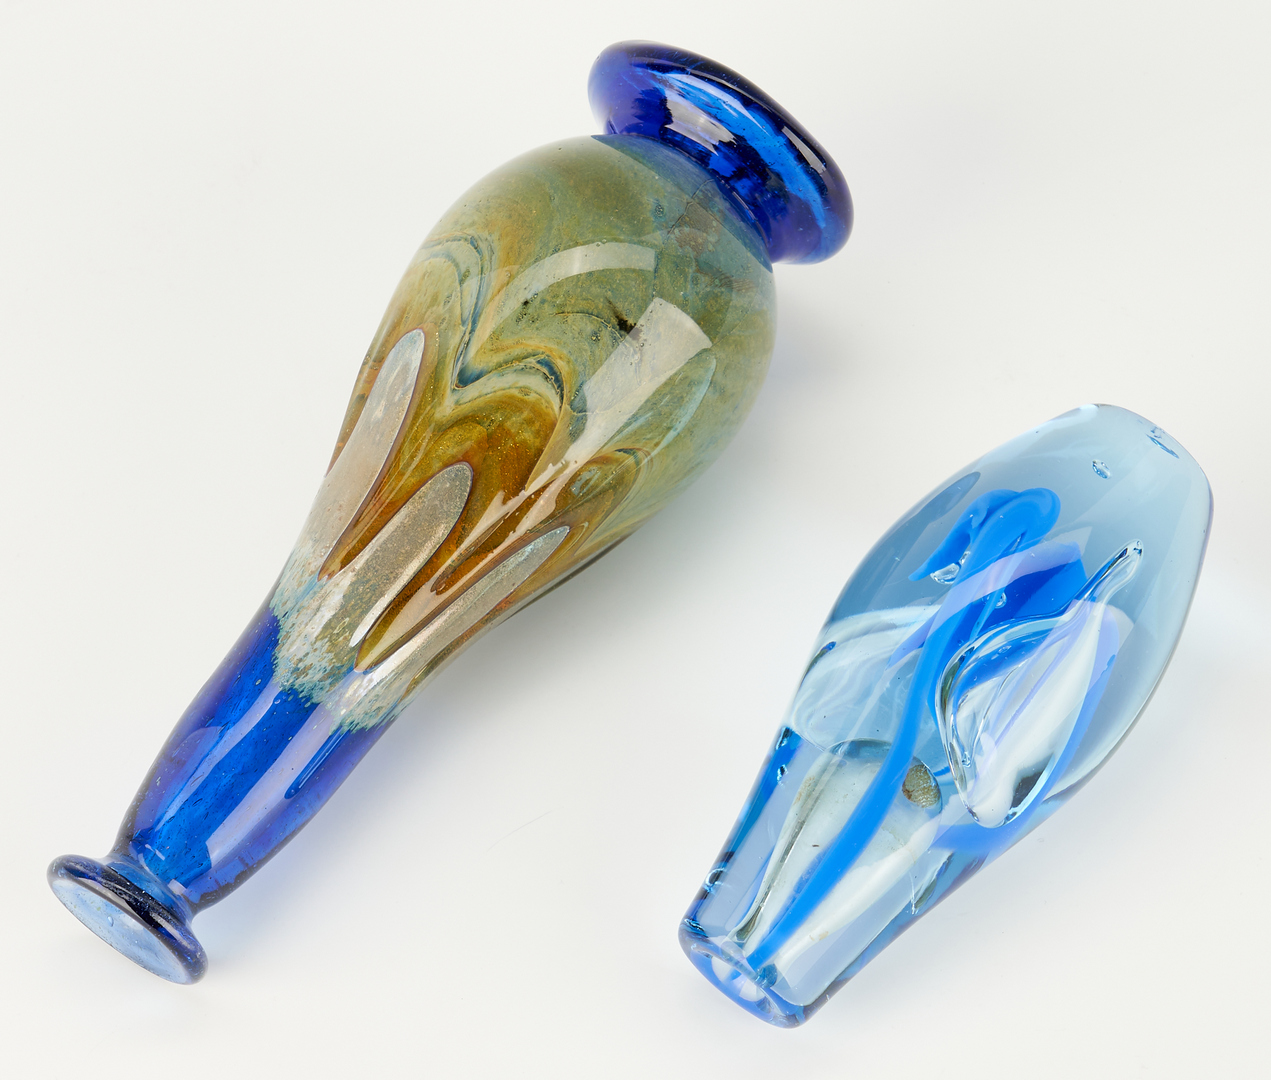 Lot 542: 4 Pcs. Art Glass, incl. Richard Jolley